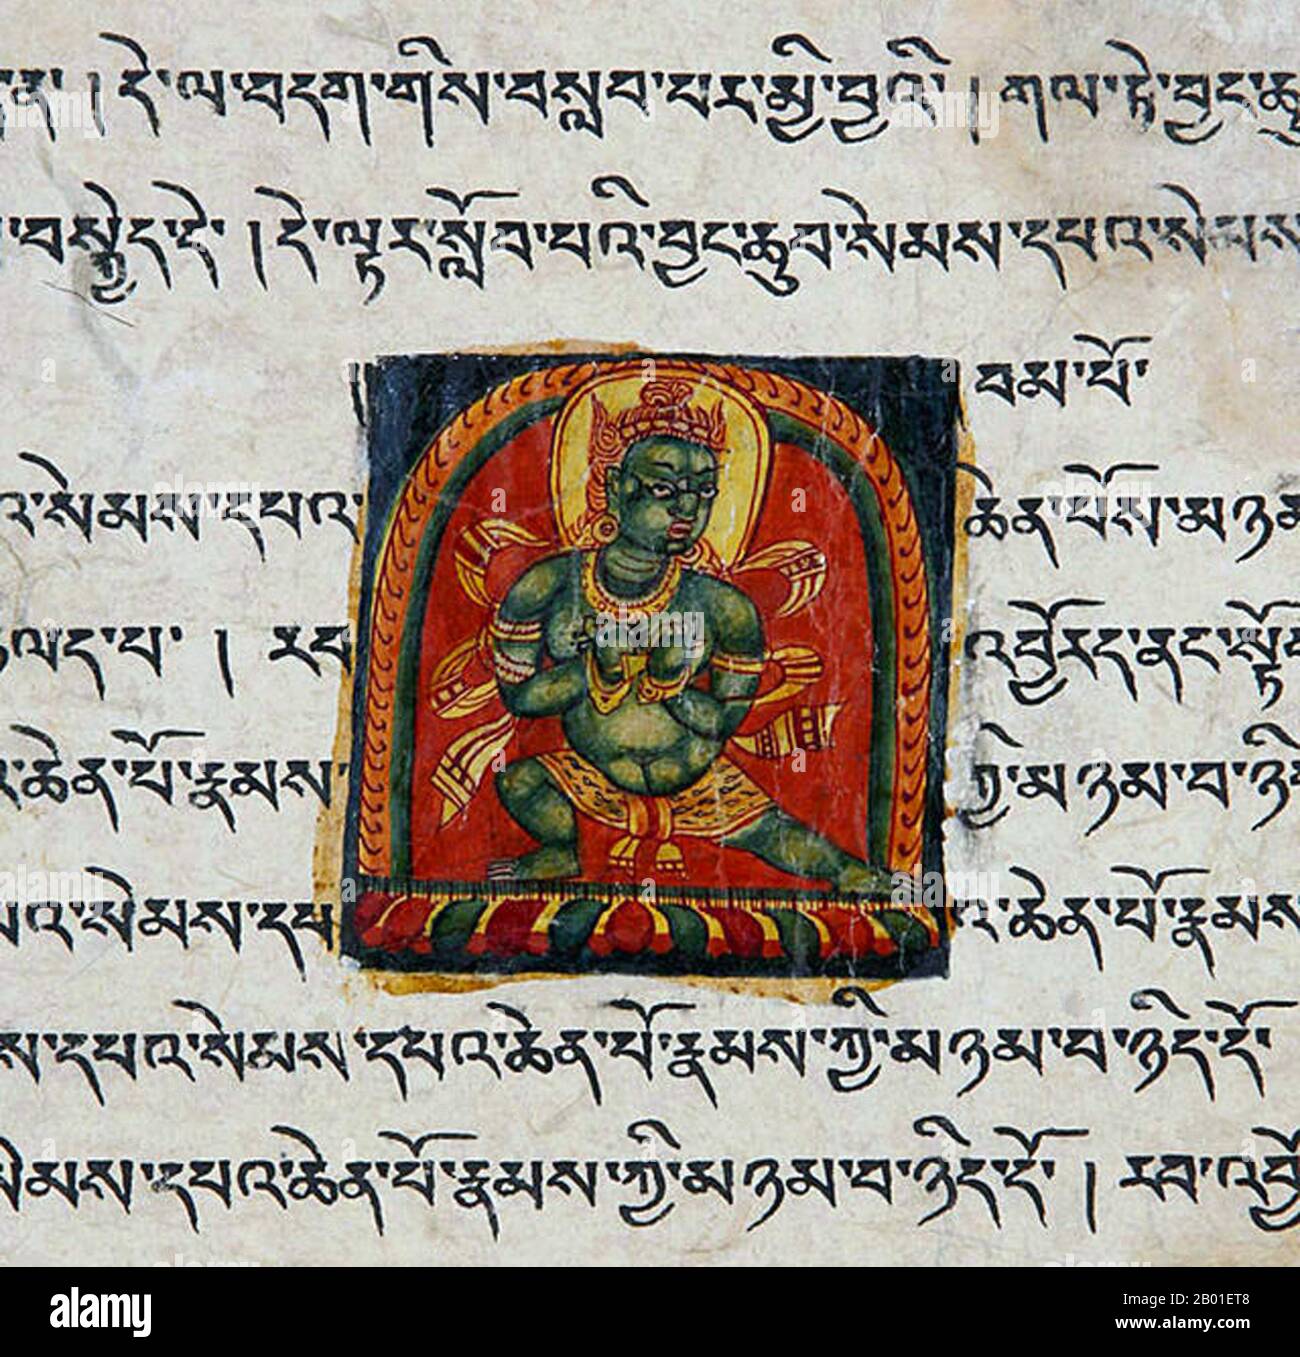 Cina/Tibet: Sezione di un manoscritto illuminato, secolo 12th-13th. L'alfabeto tibetano è un'abugida di origine indica usata per scrivere la lingua tibetana, la lingua Dzongkha, Denzongkha, Ladakhi e talvolta la lingua Balti. La forma stampata dell'alfabeto è chiamata uchen script (tibetano: དབུ་ཅན་; Wylie: dbu-CAN; 'con una testa'), mentre la forma corsiva scritta a mano usata nella scrittura quotidiana è chiamata umê (tibetano: དབུ་མེད་; Wylie: dbu-med; 'headless'). L'alfabeto è strettamente legato ad una vasta identità etnica tibetana. Foto Stock